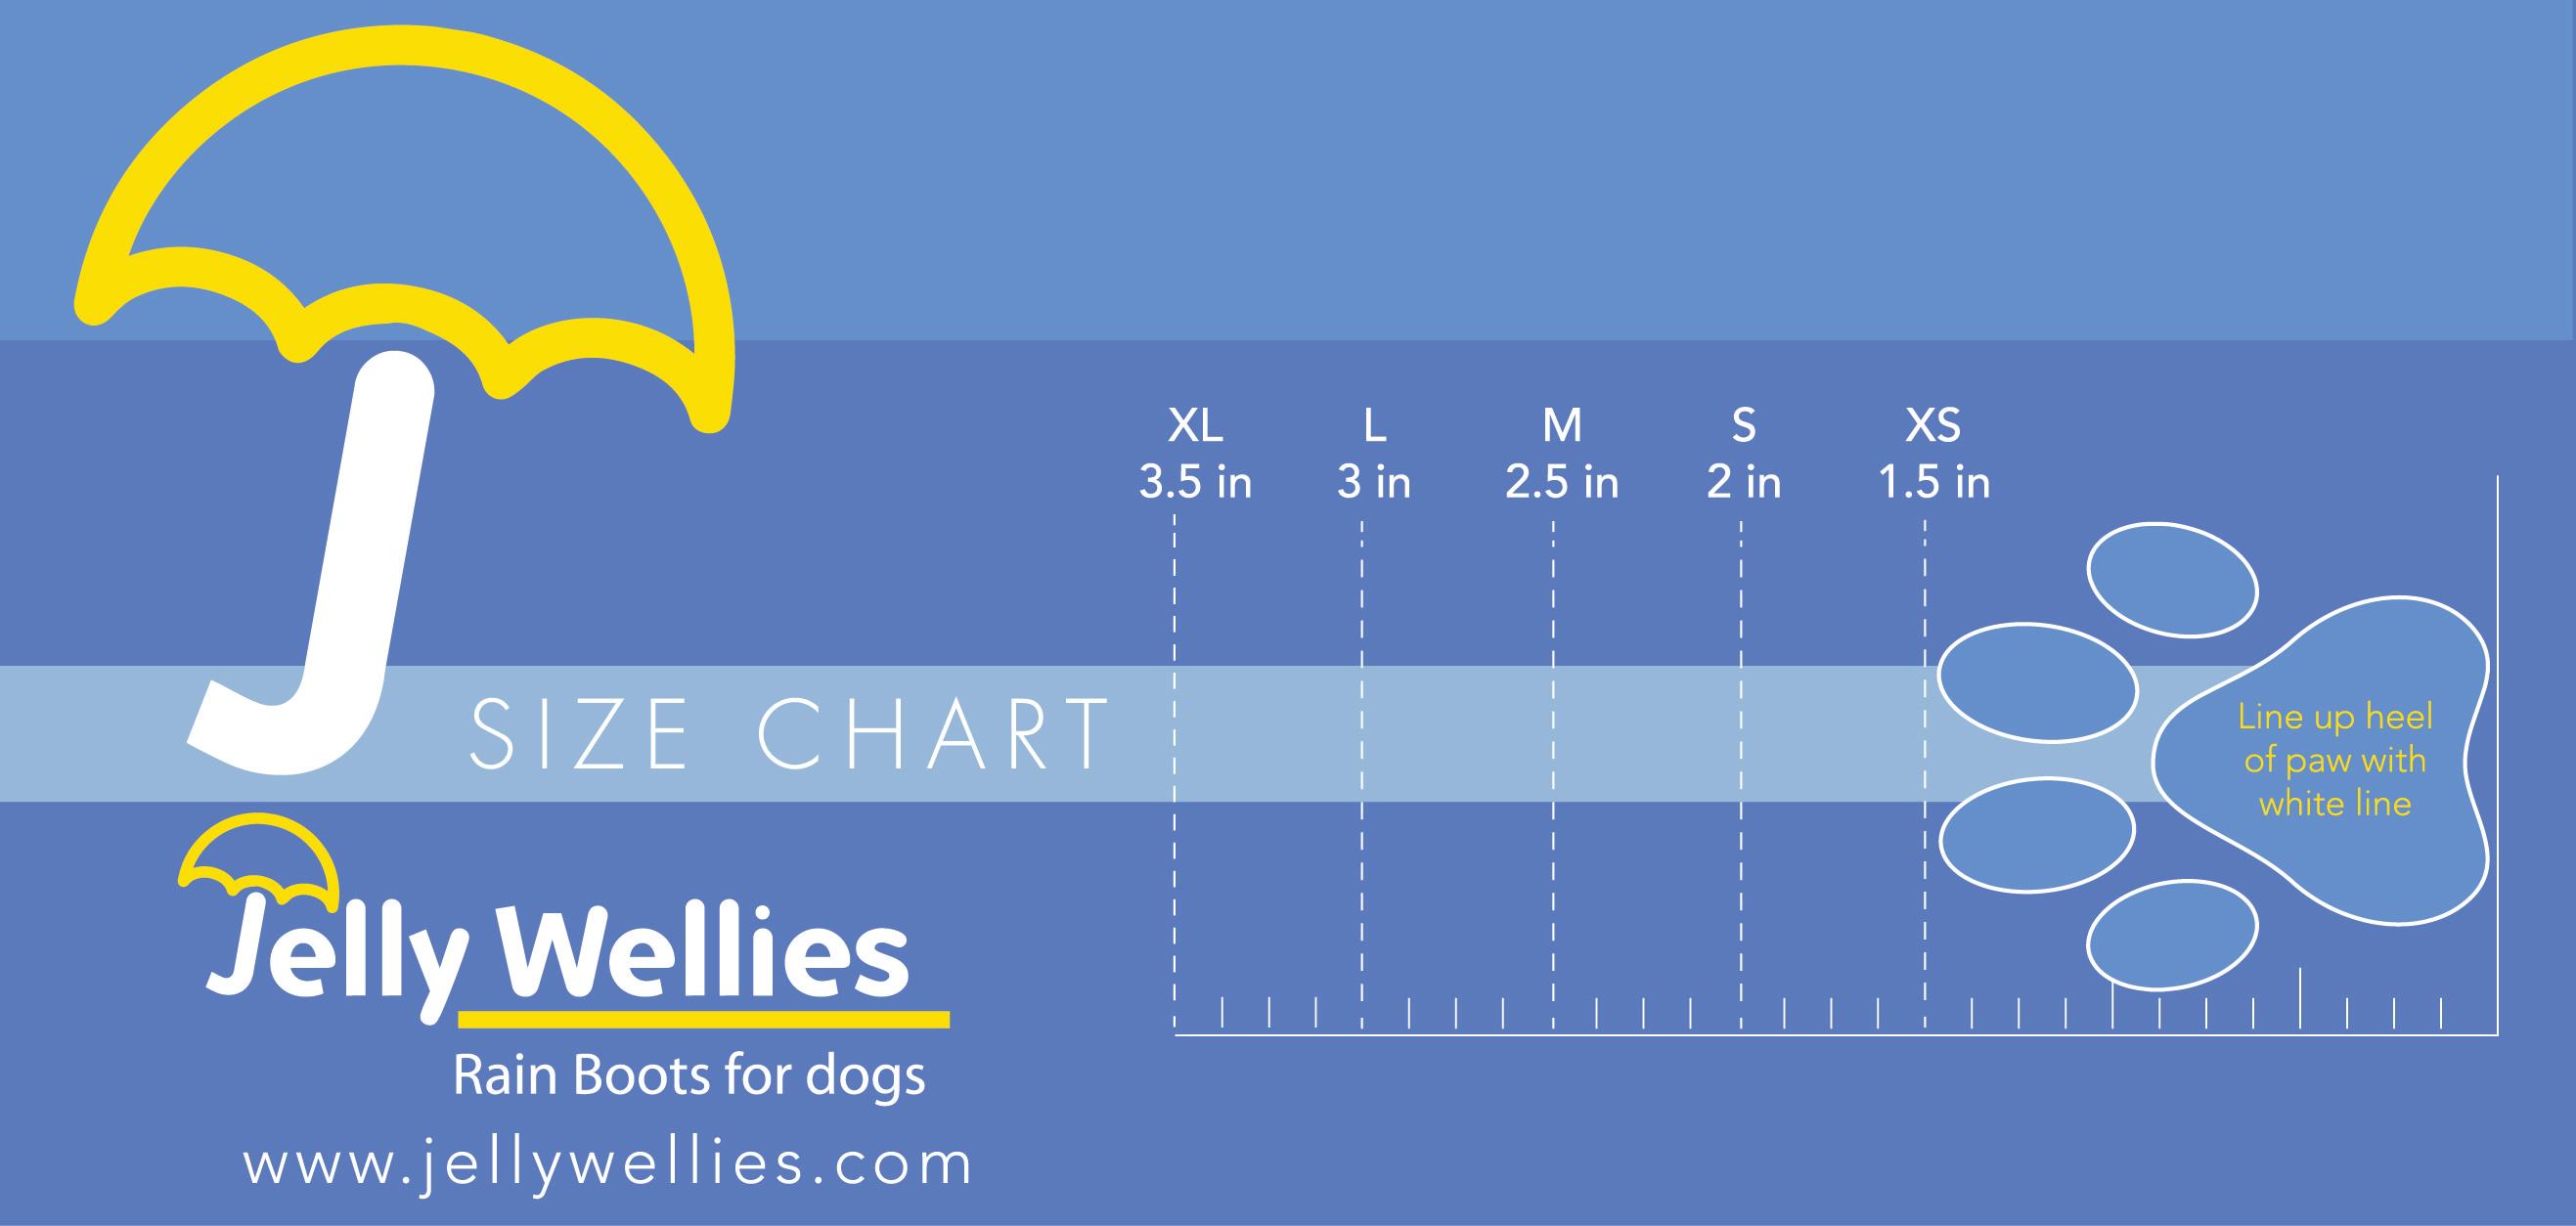 jellywellies_size_chart